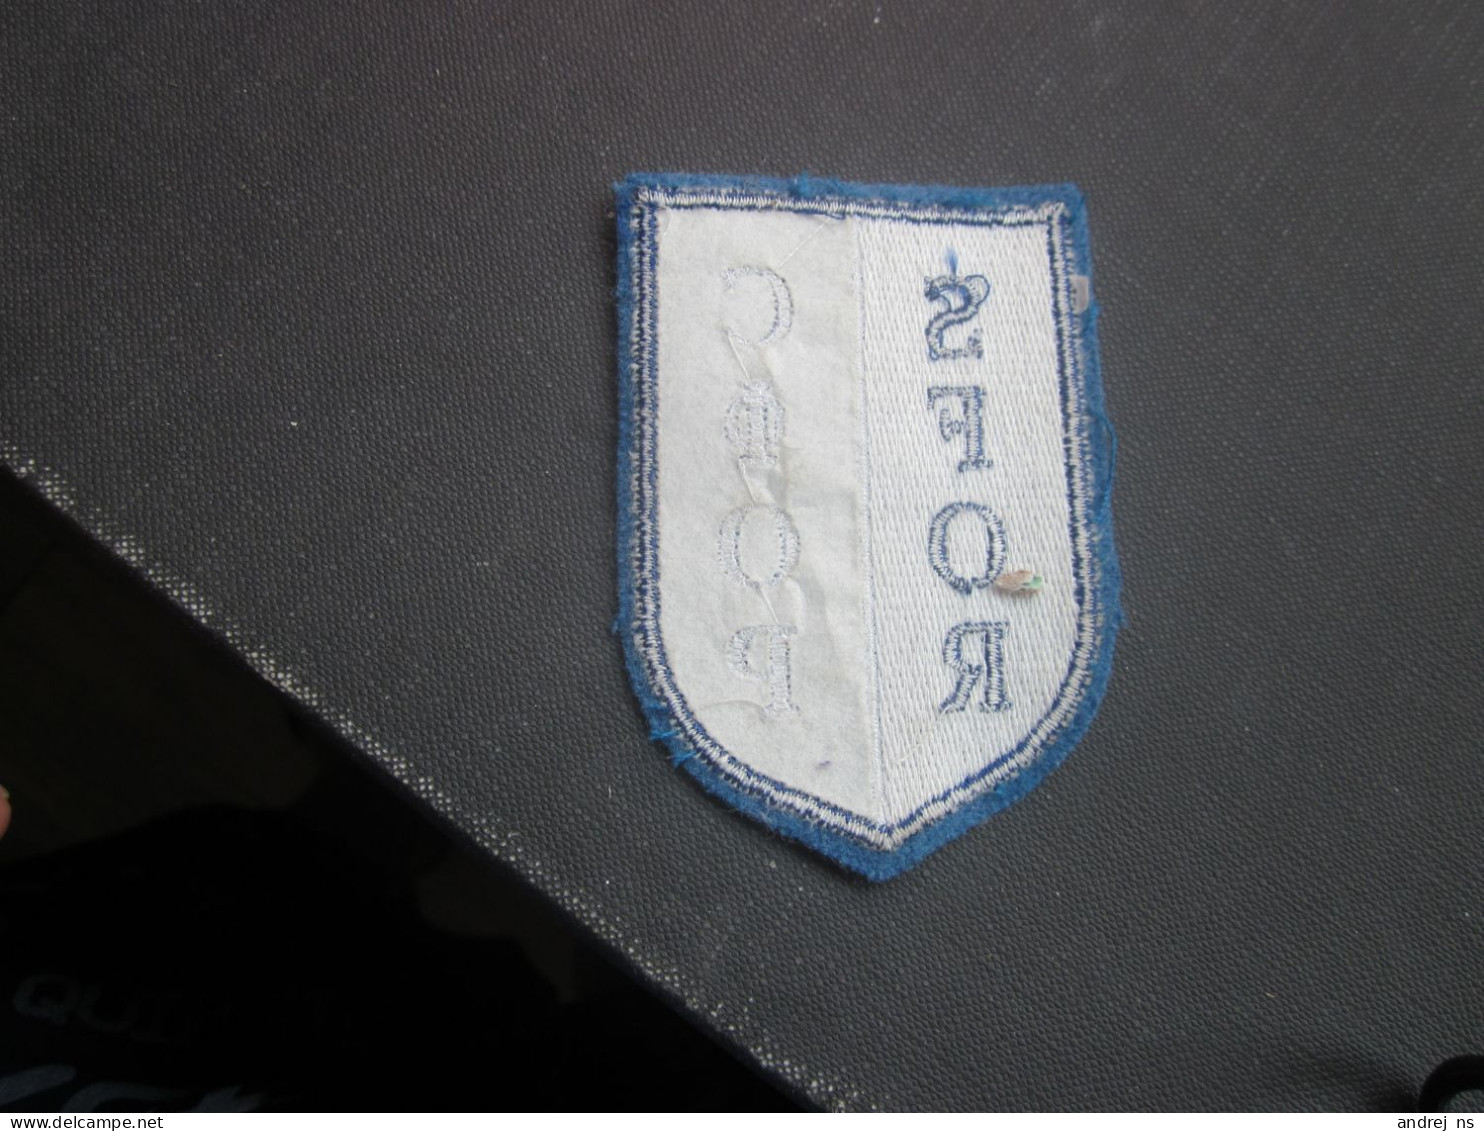 Emblem SFOR - Patches